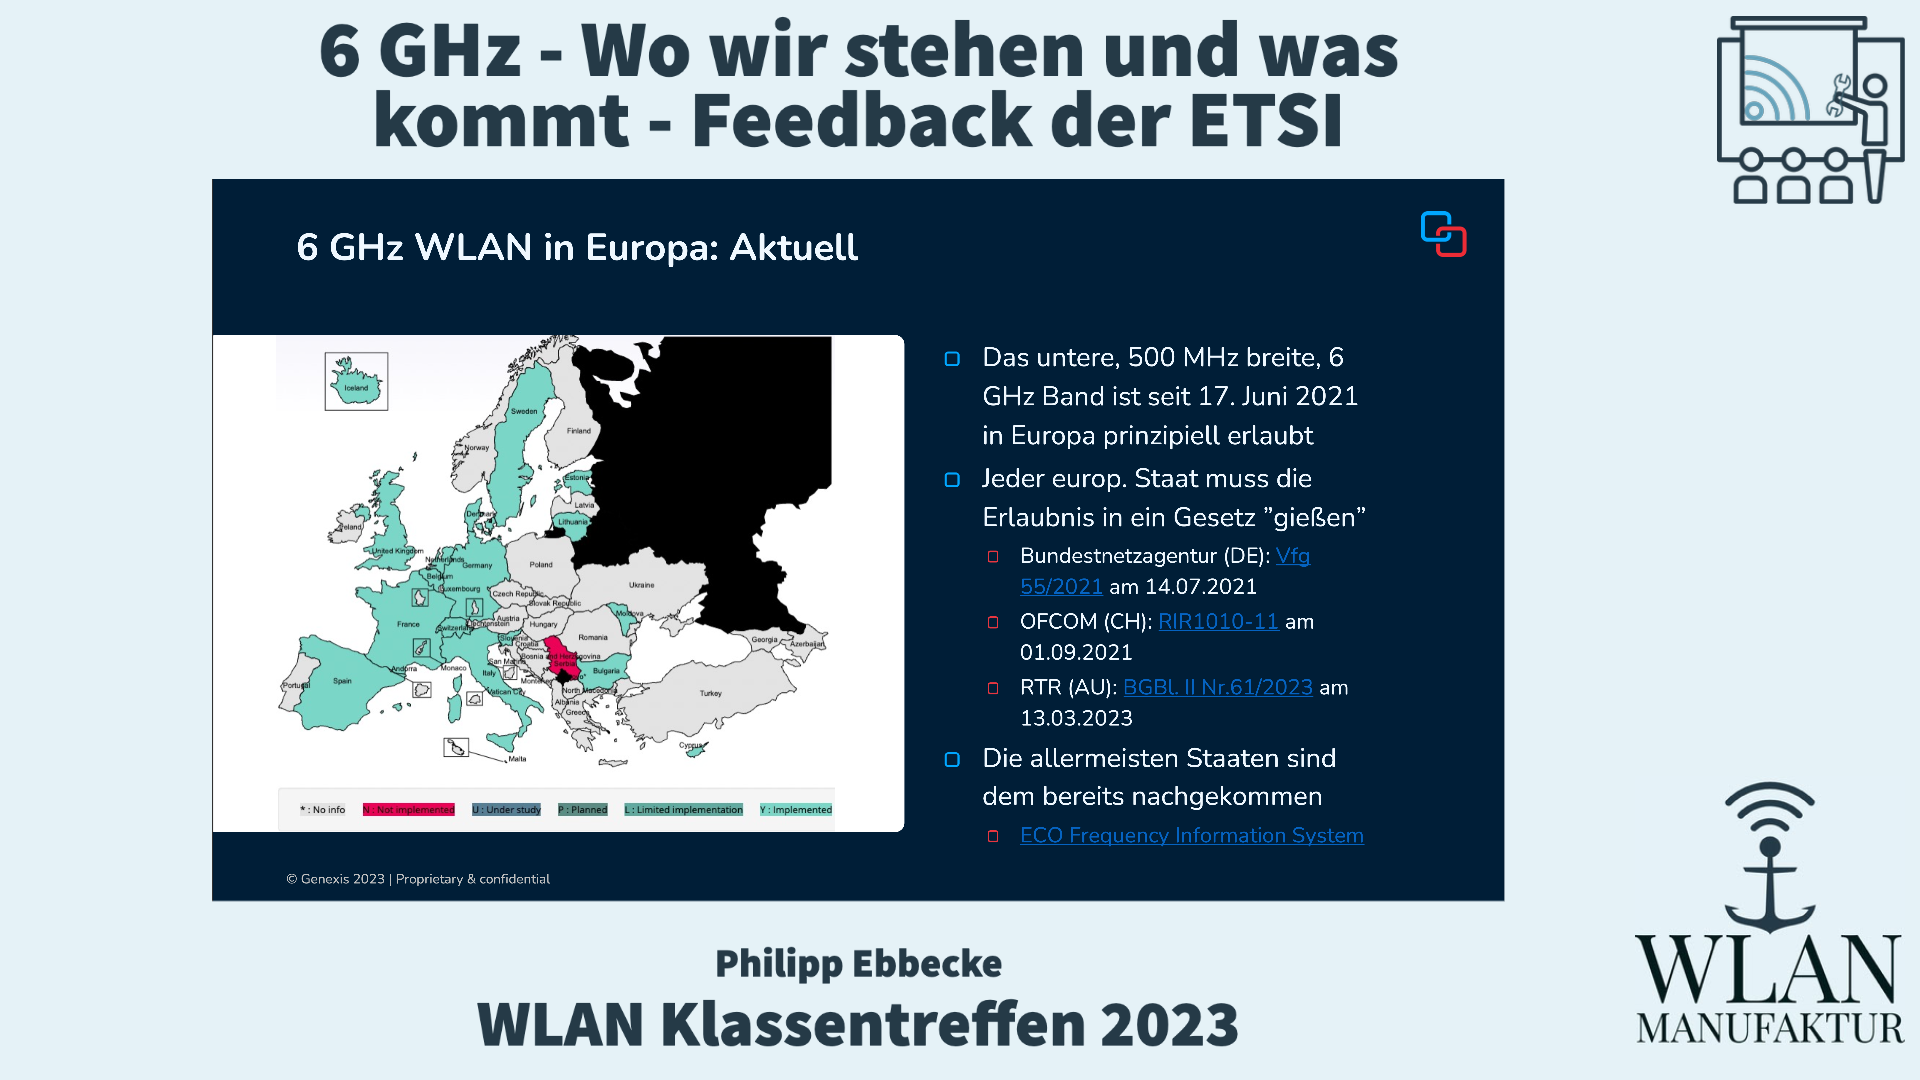 Video laden: Aufzeichnung der Präsentation vom WLAN Klassentreffen - 6 GHz - Wo wir stehen und was kommt - Feedback der ETSI